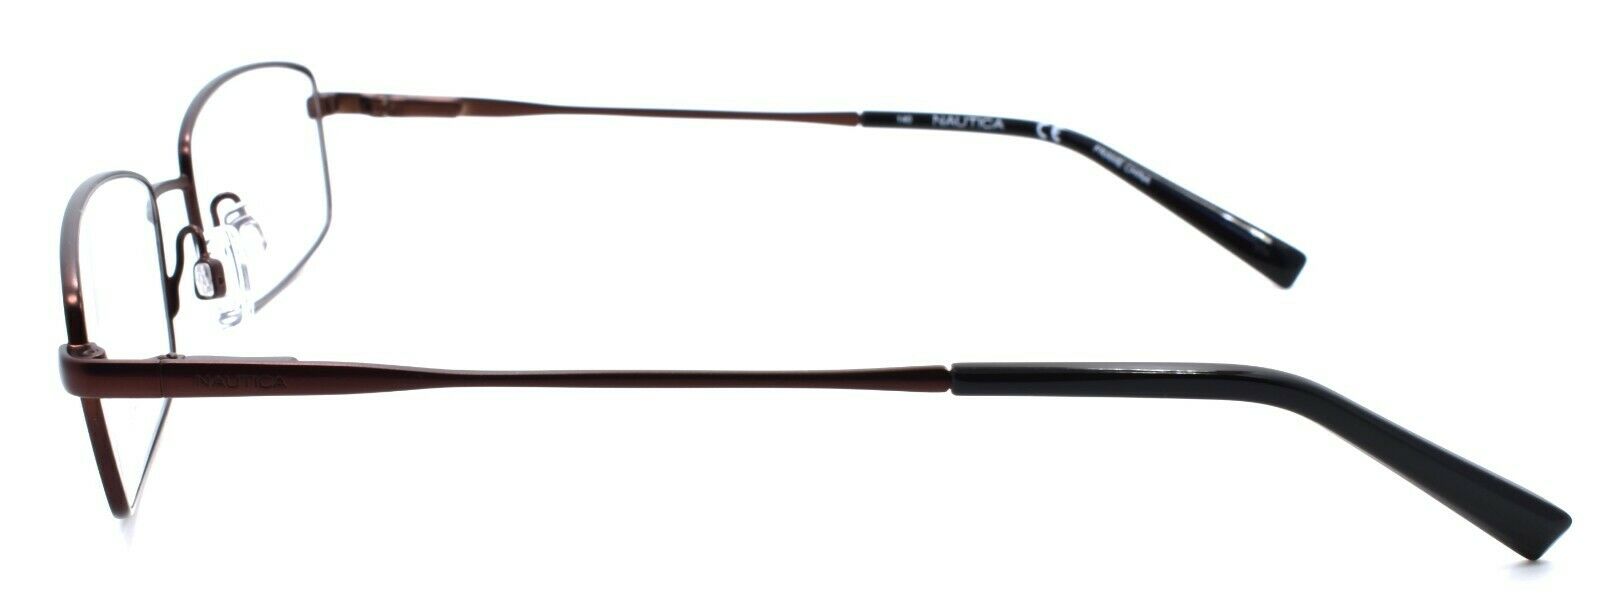 3-Nautica N7298 210 Men's Eyeglasses Frames 55-17-140 Satin Brown-688940462142-IKSpecs